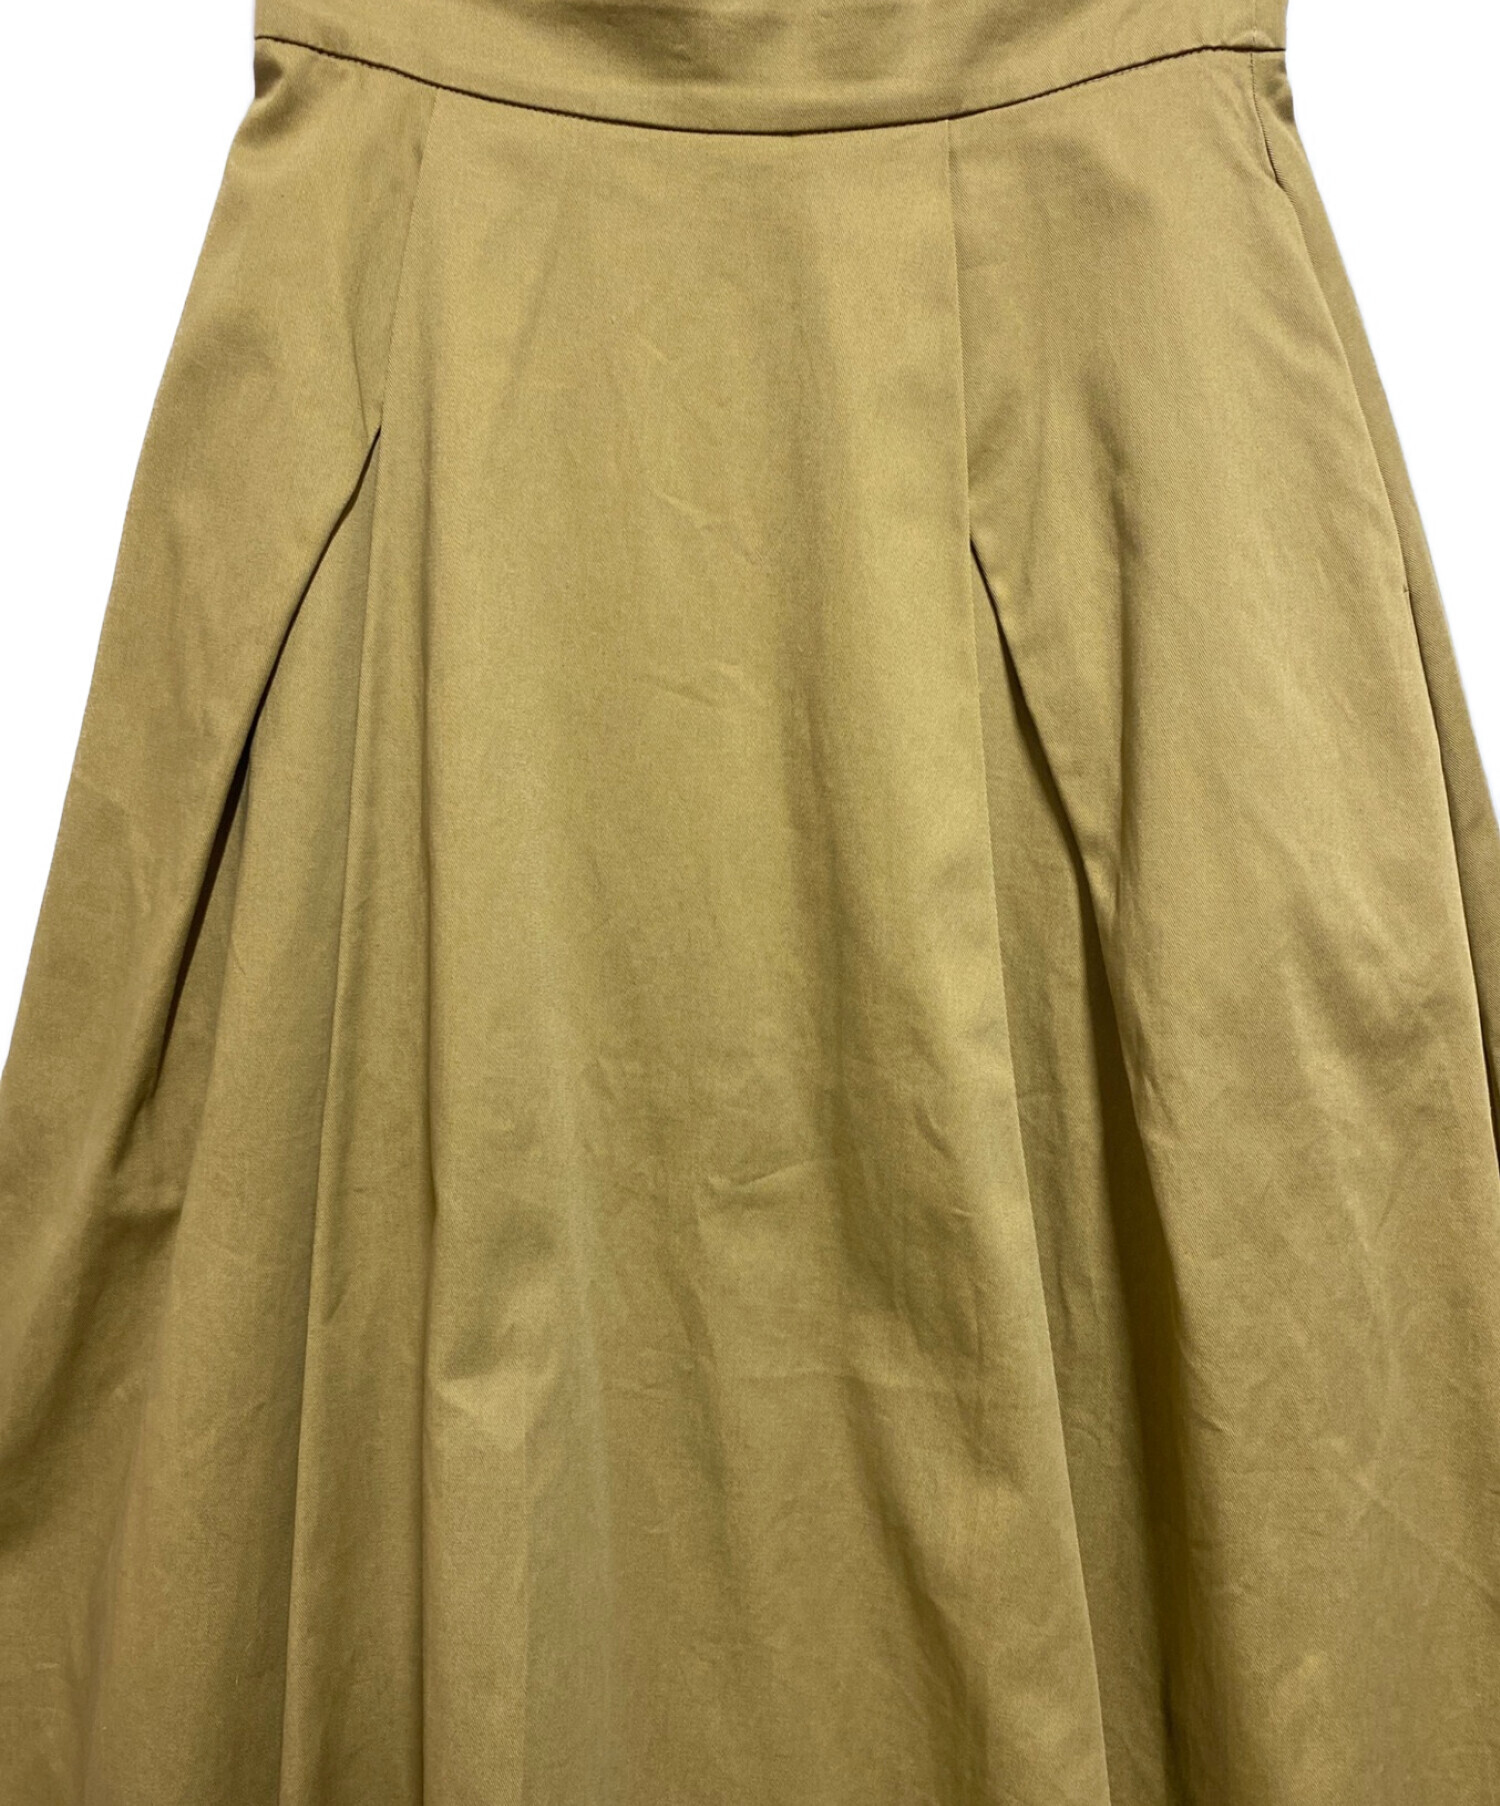 RIM.ARK (リムアーク) ドッキングチノロングスカート ベージュ サイズ:38